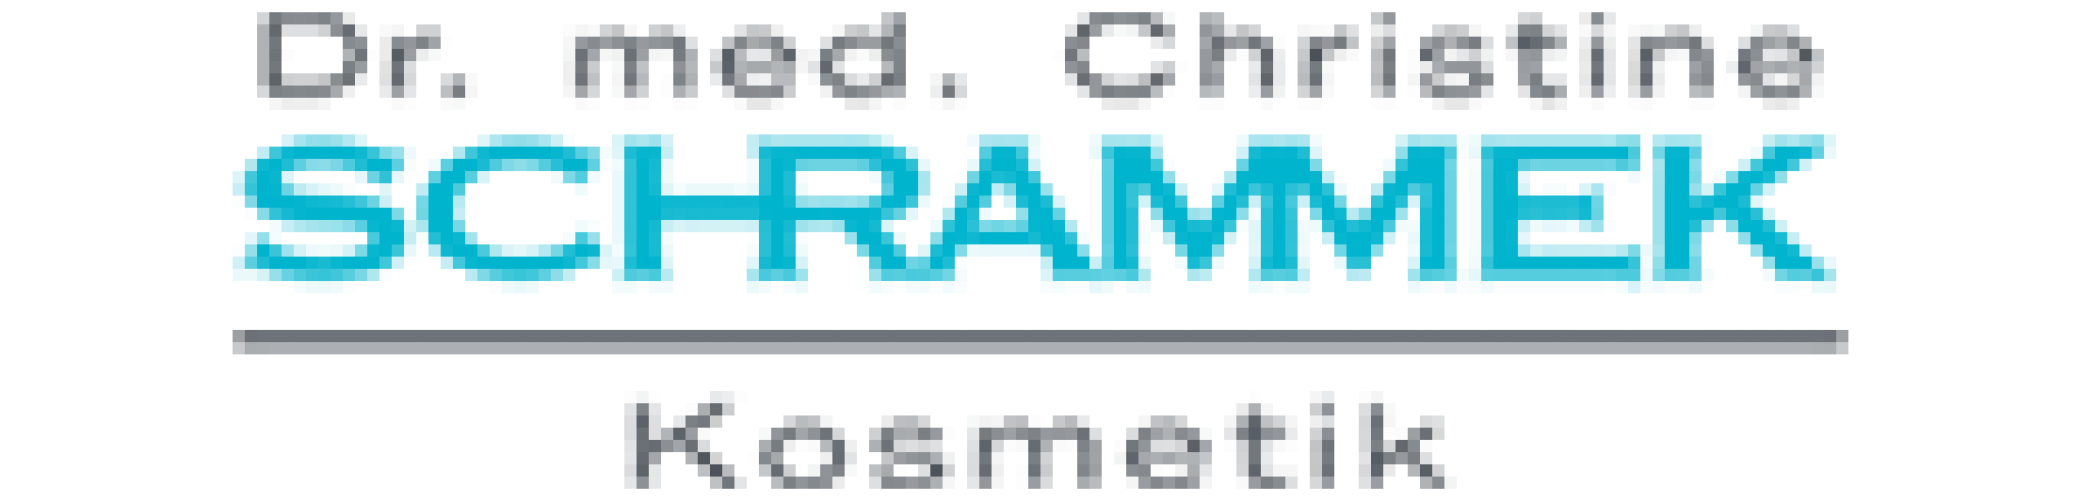 drSchrammekKosmetik-logo